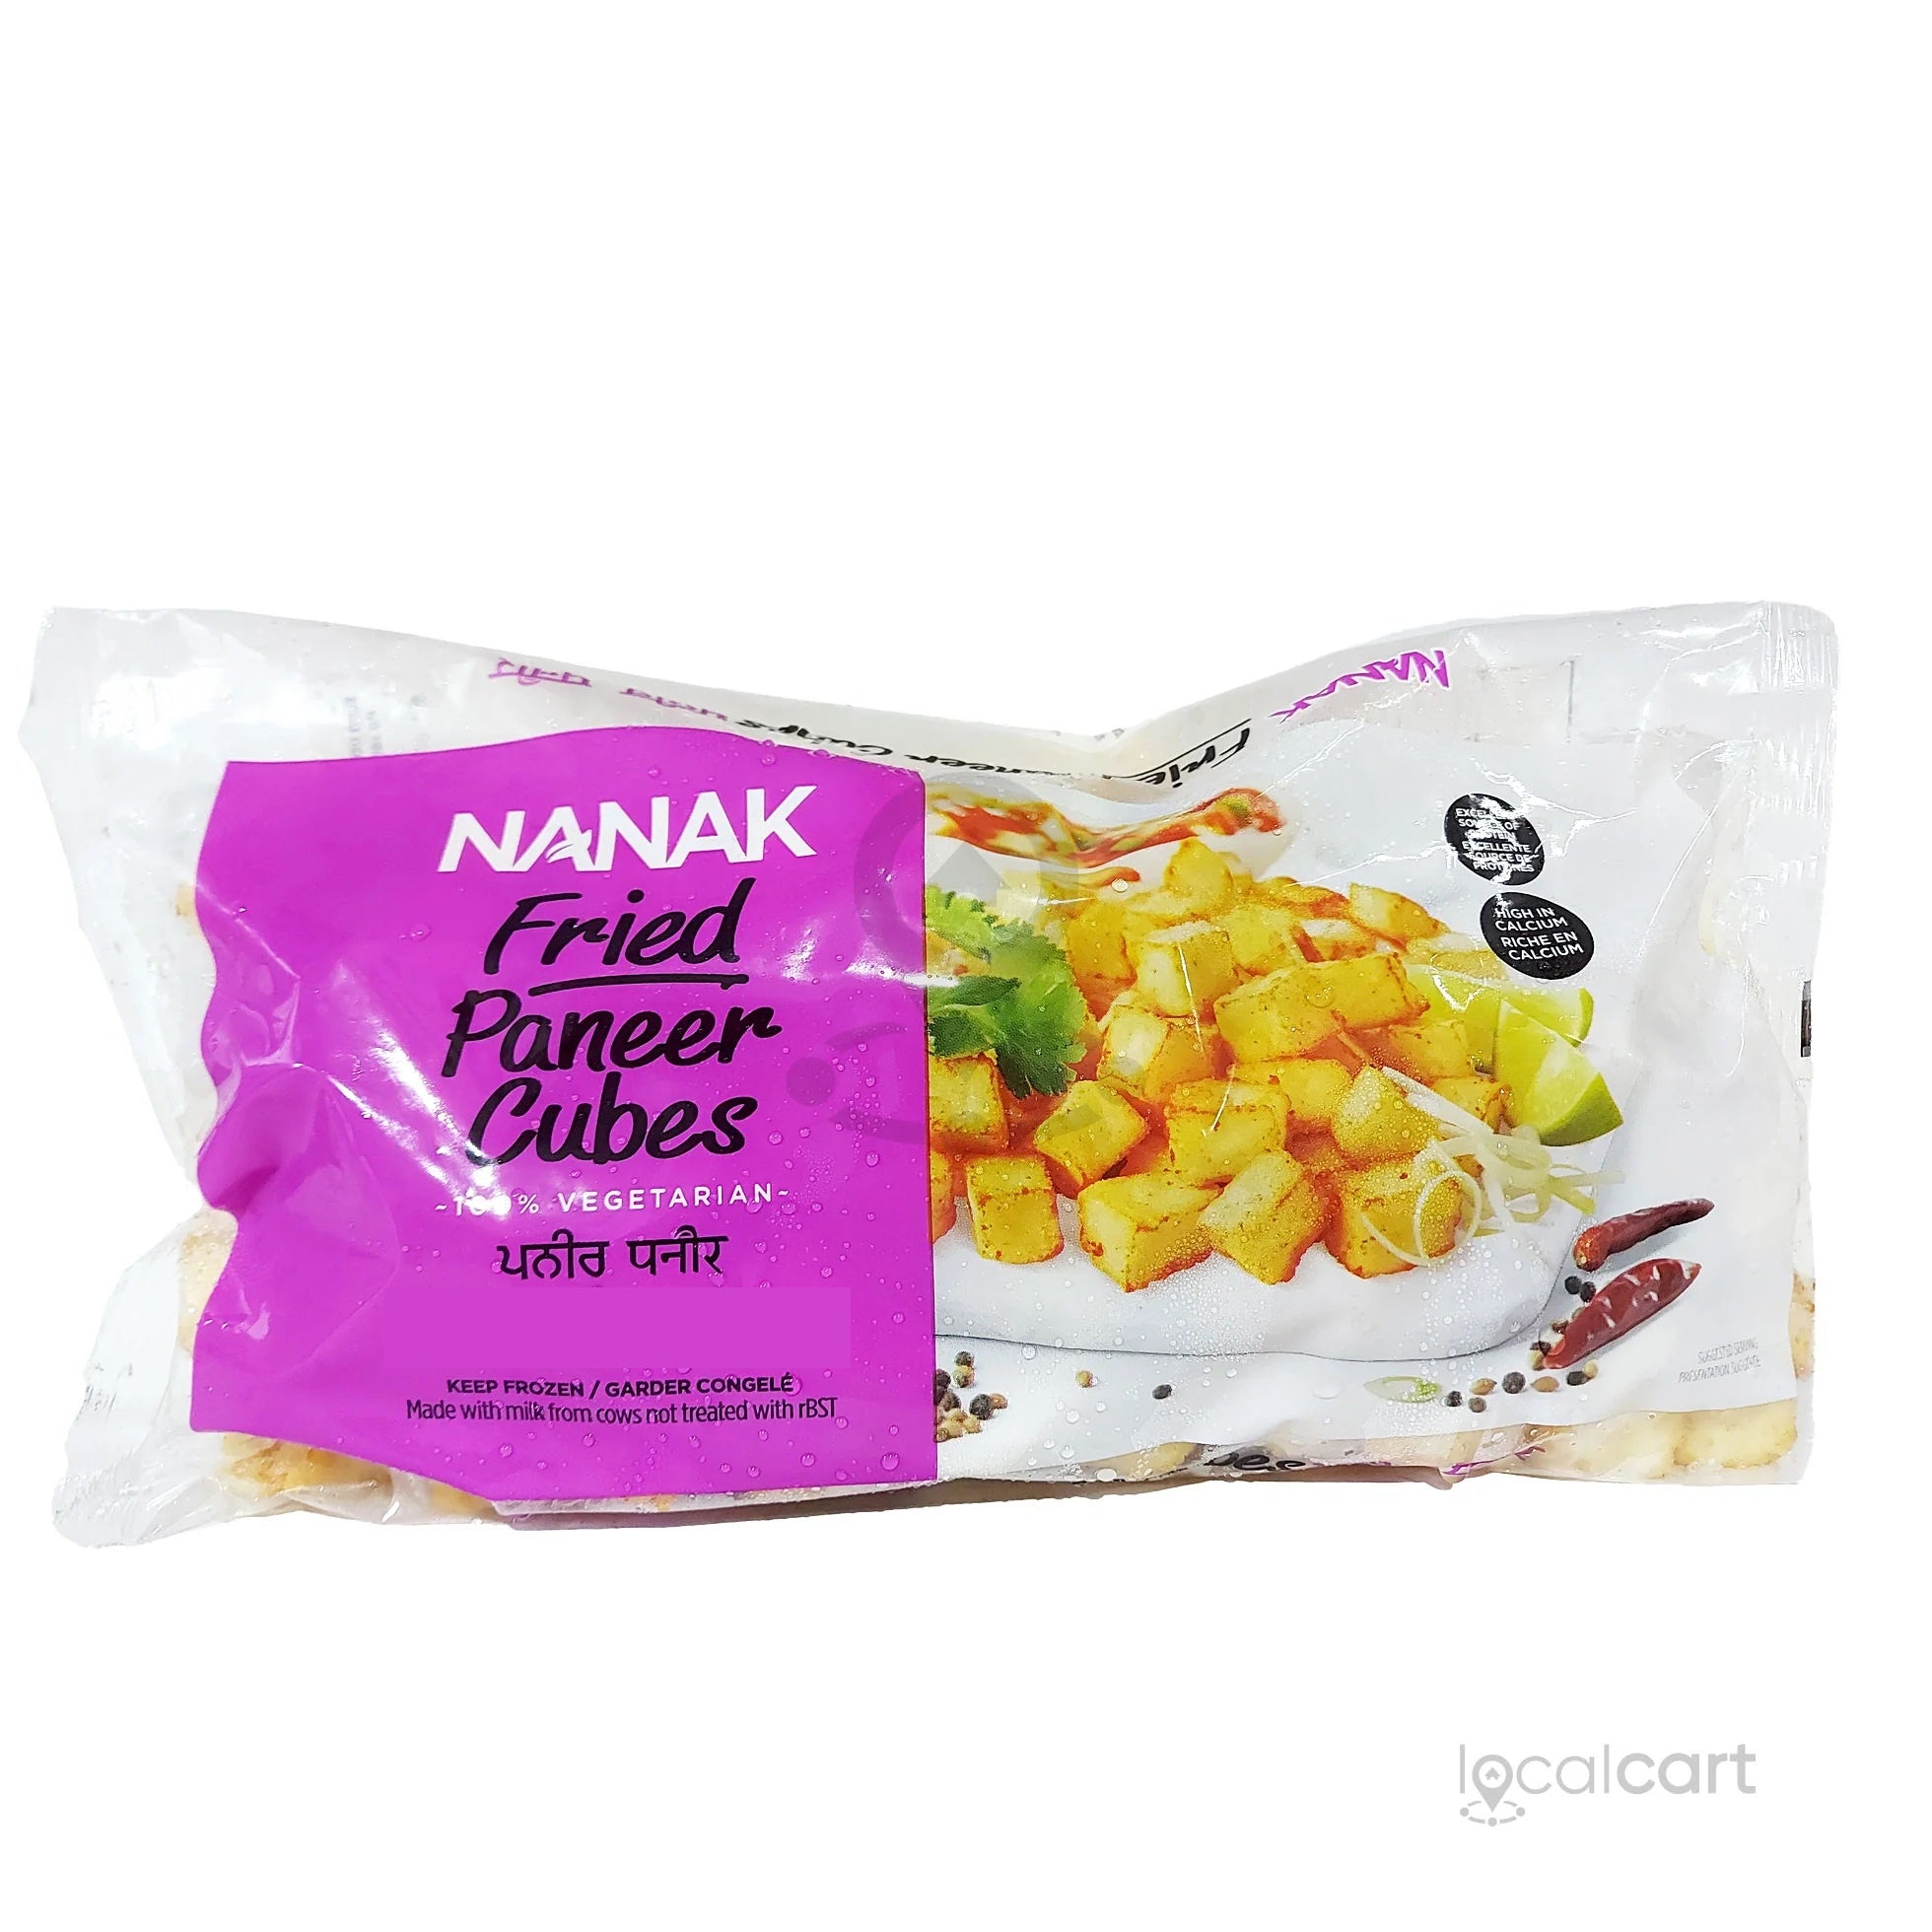 Nanak Frozen - Paneer Cubes (Fried) 400g